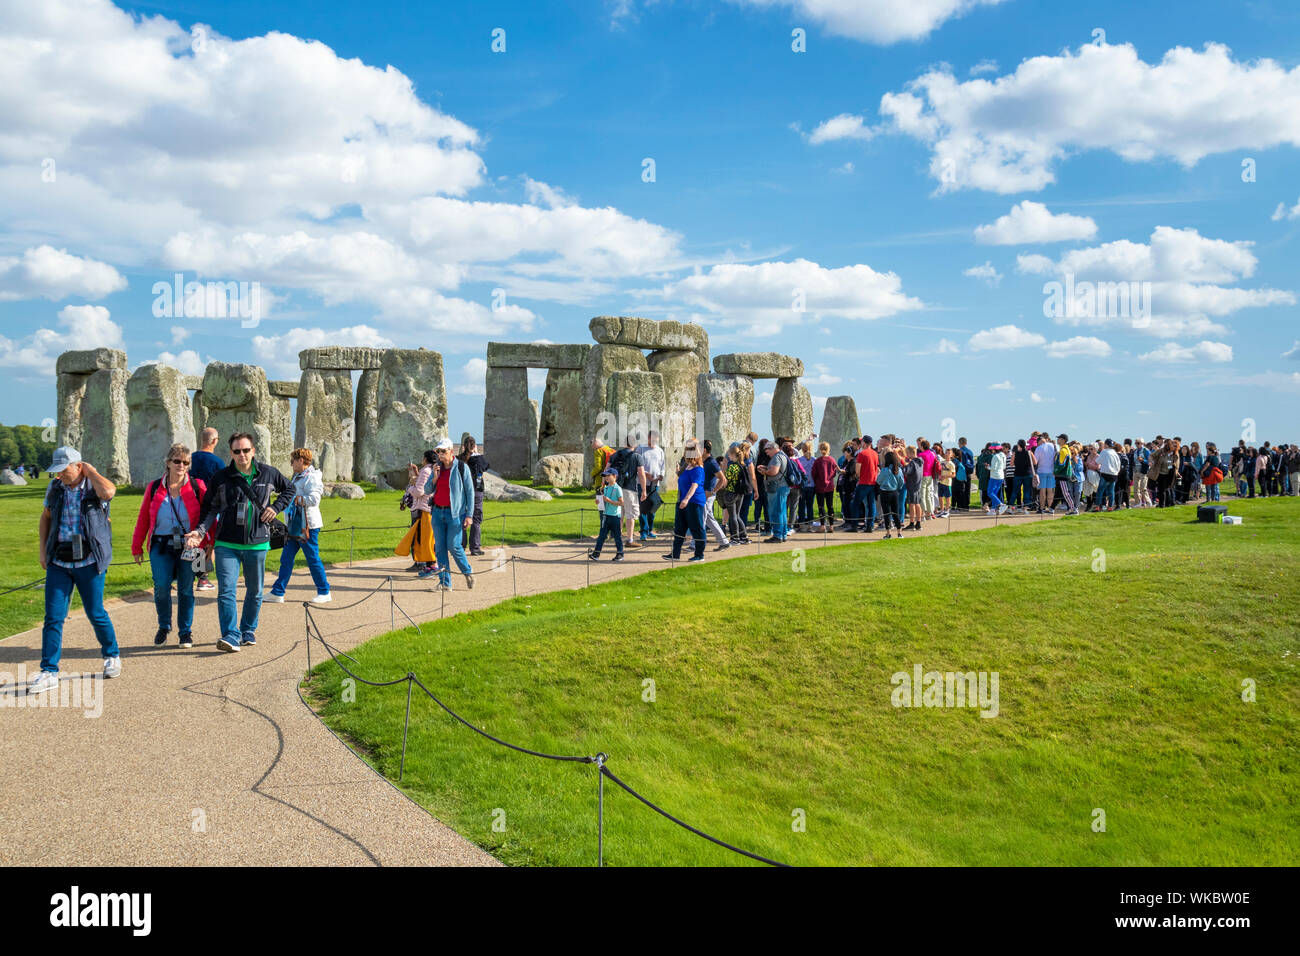 Crowds at Stonehenge stone circle stonehenge near Amesbury Wiltshire england uk gb Europe Stock Photo